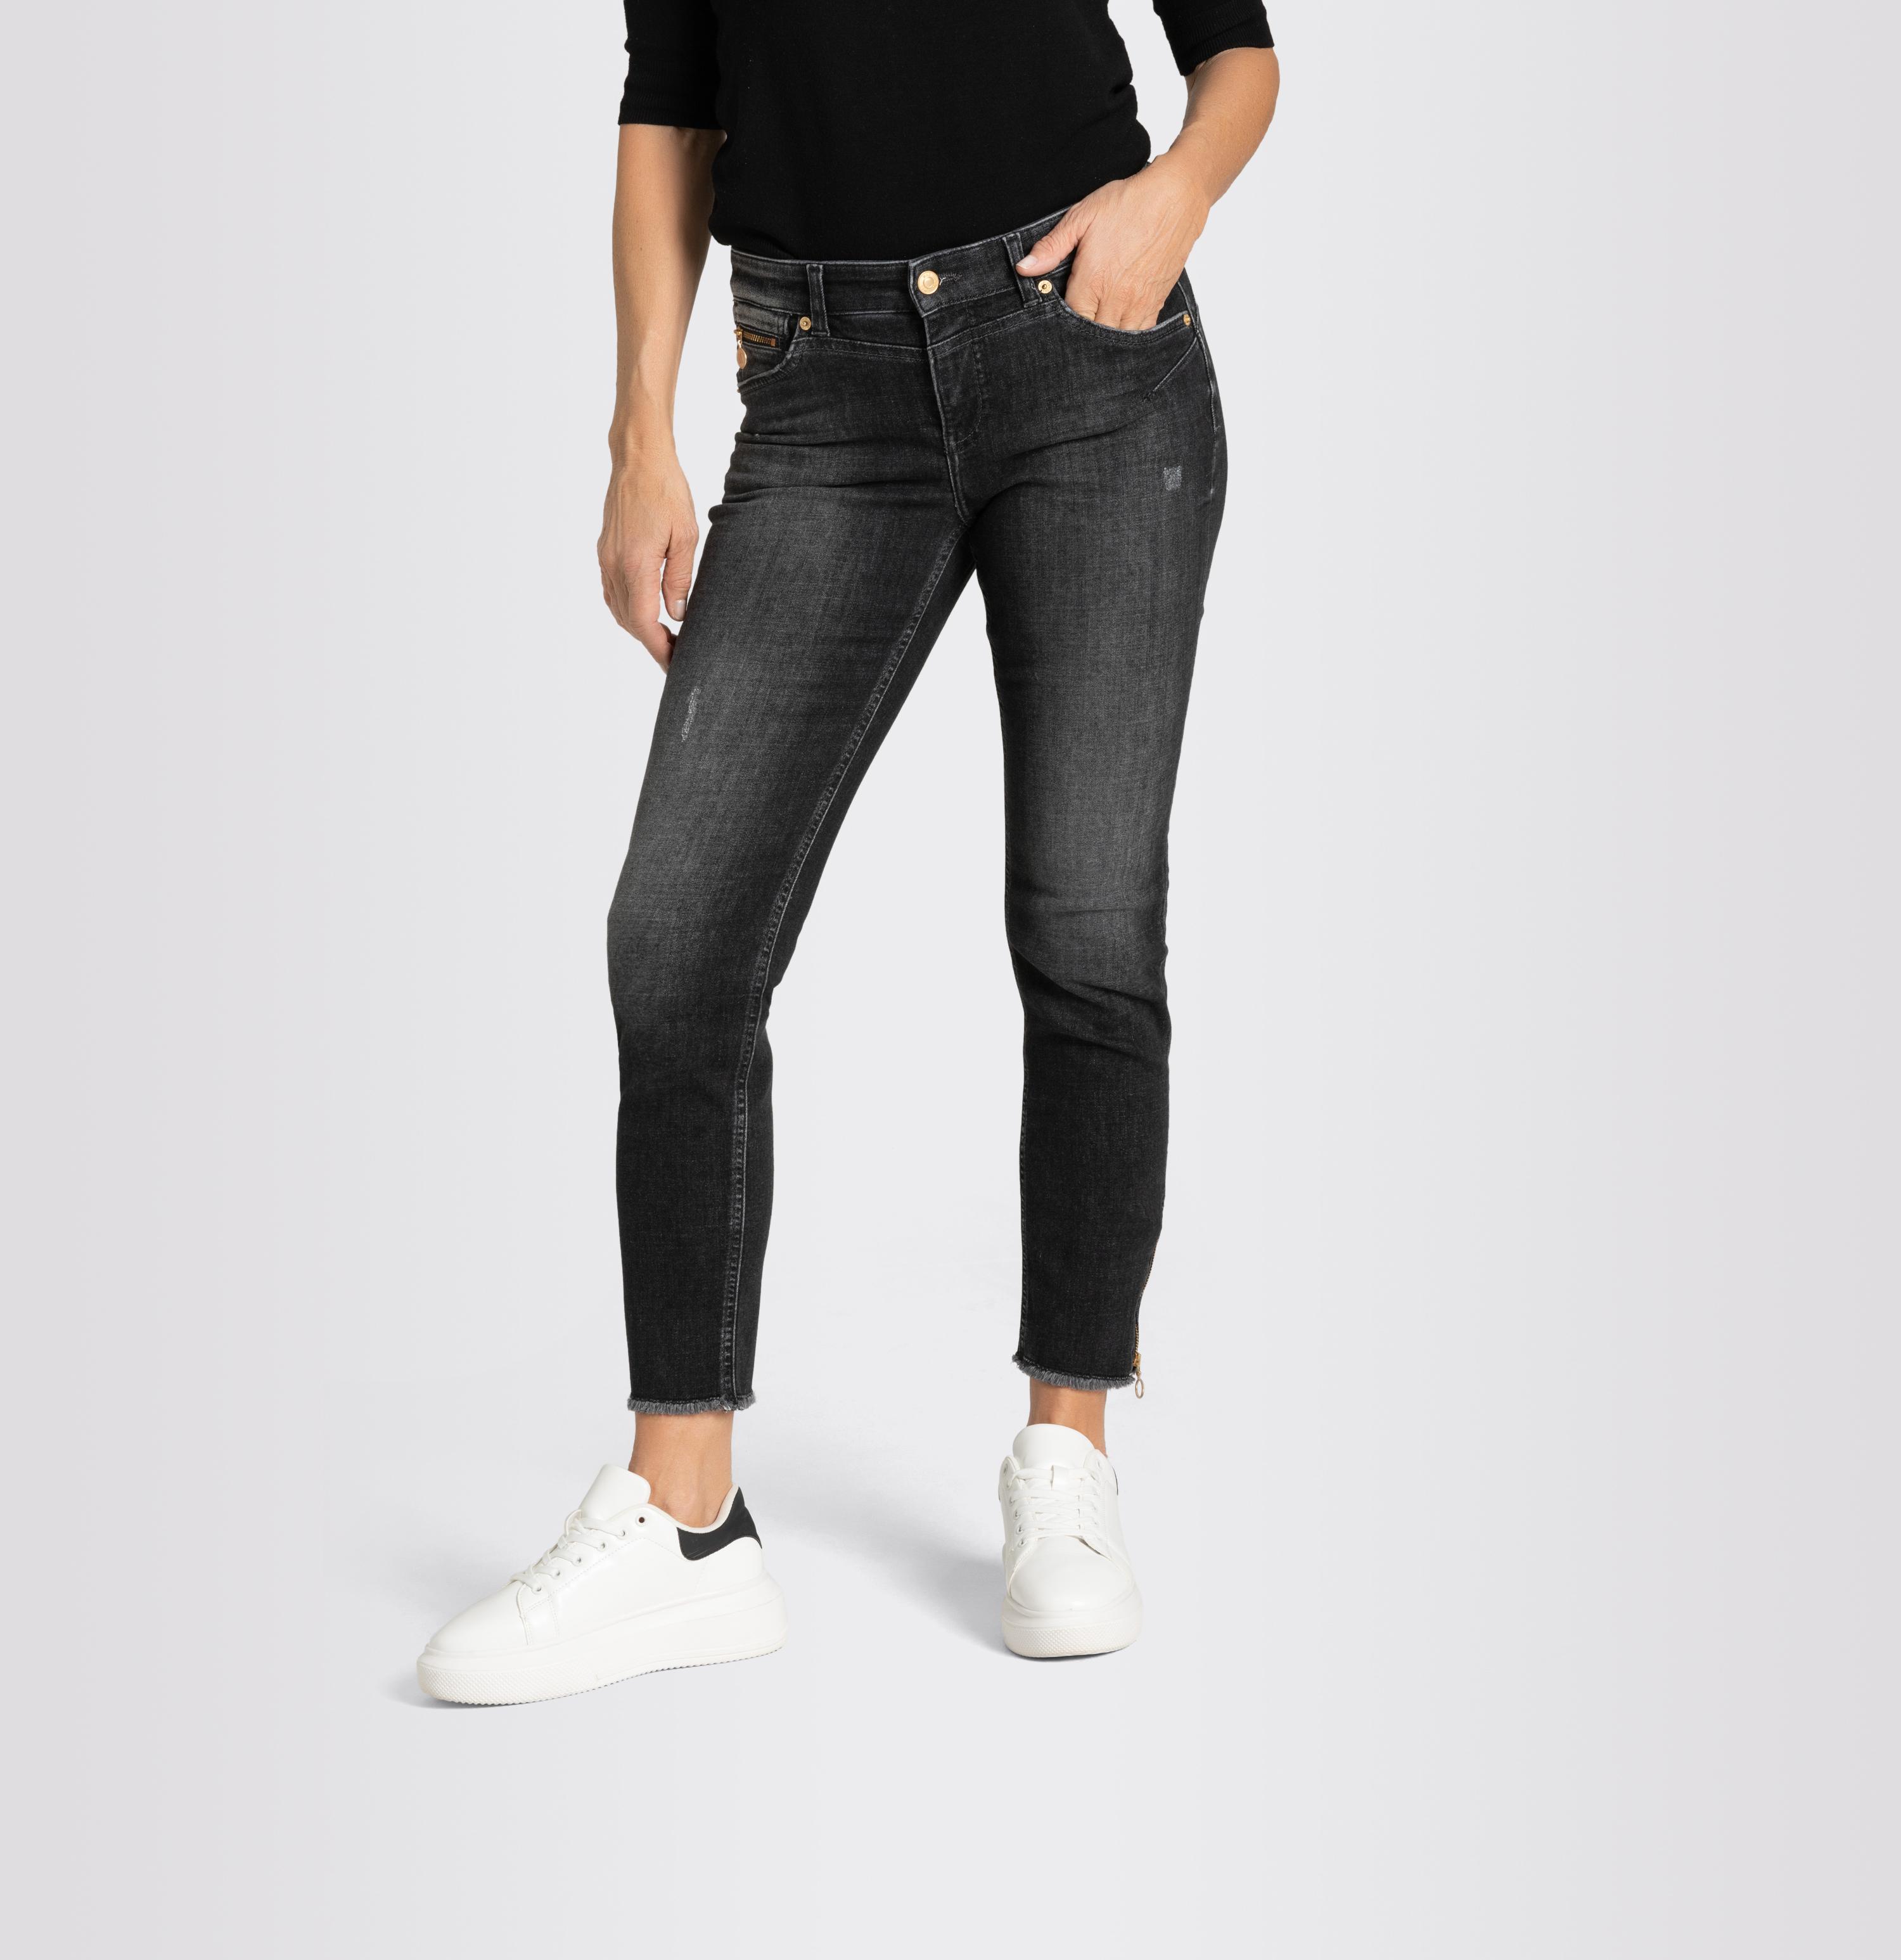 Rich PT Shop Chic, Jeans Light, Women | Slim MAC D927 grey Pants, -